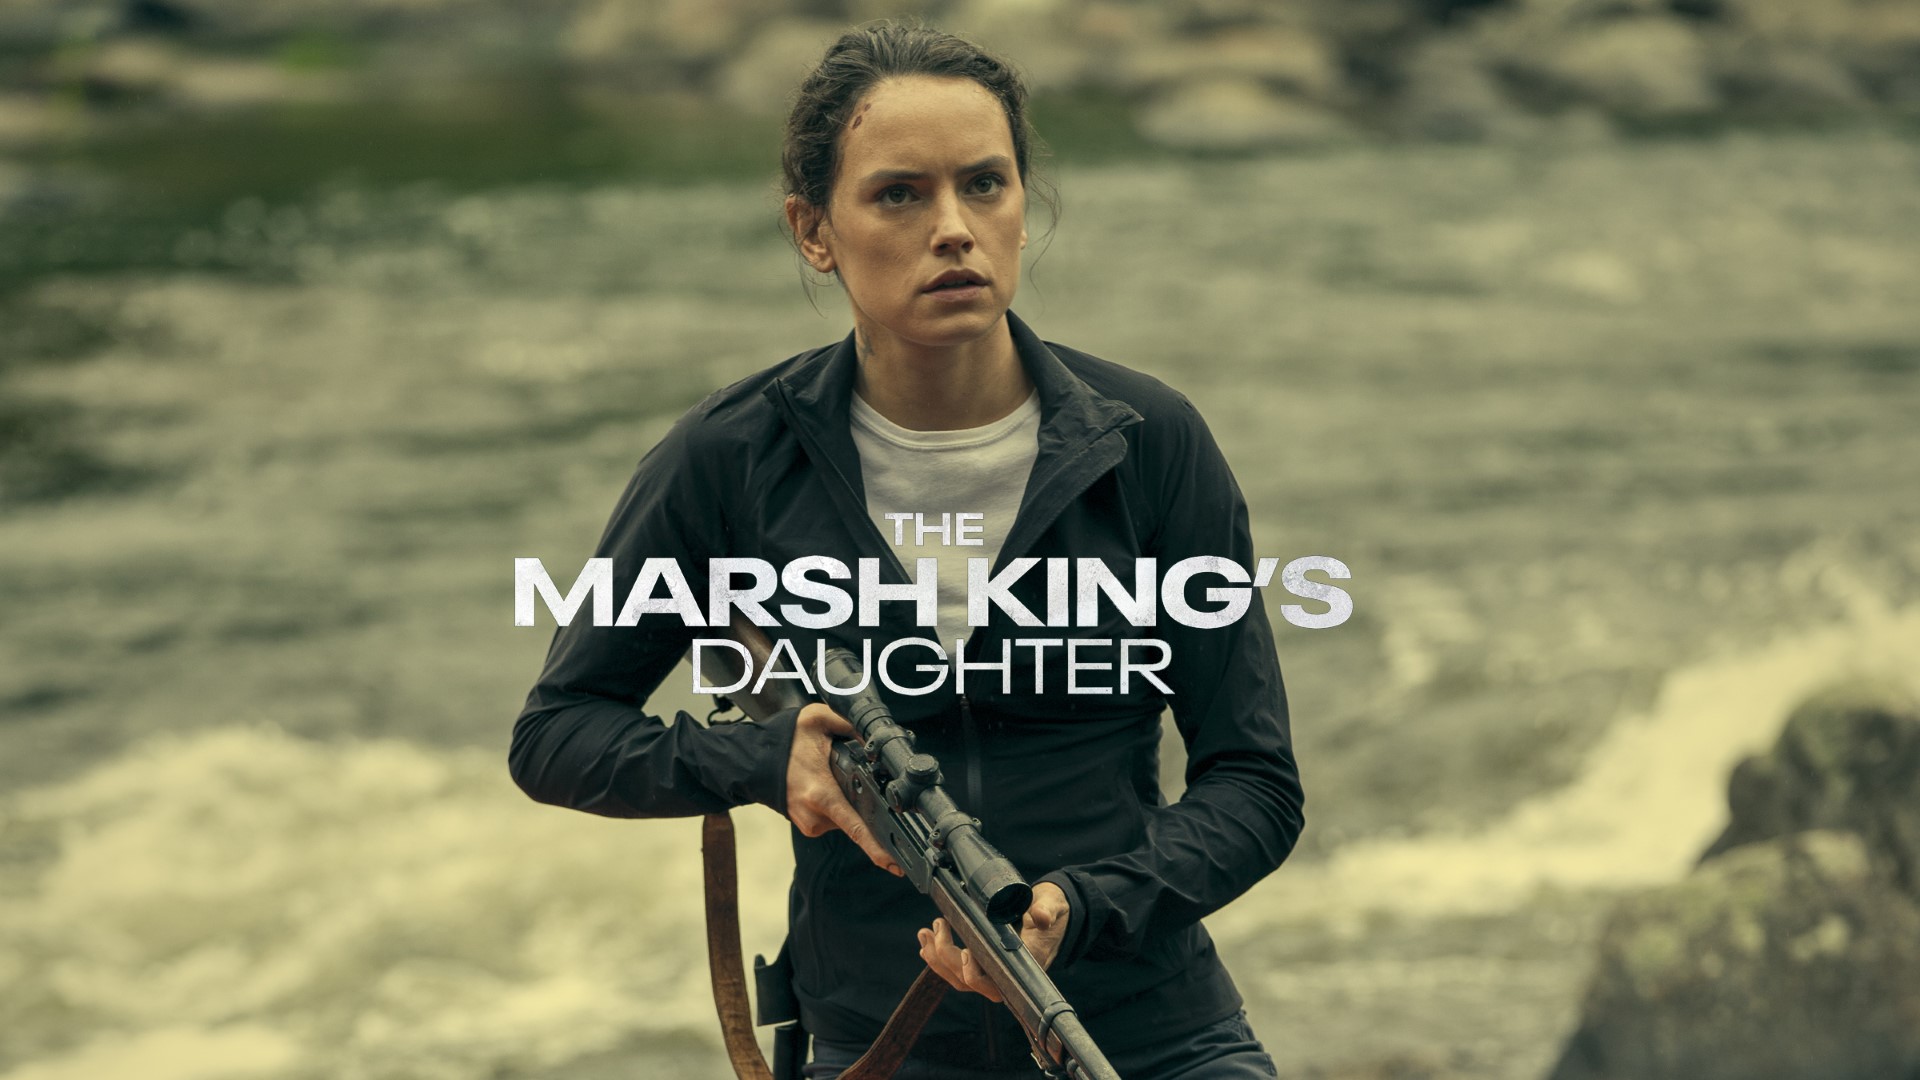 The Marsh King's Daughter' Teases a Treacherous Thriller